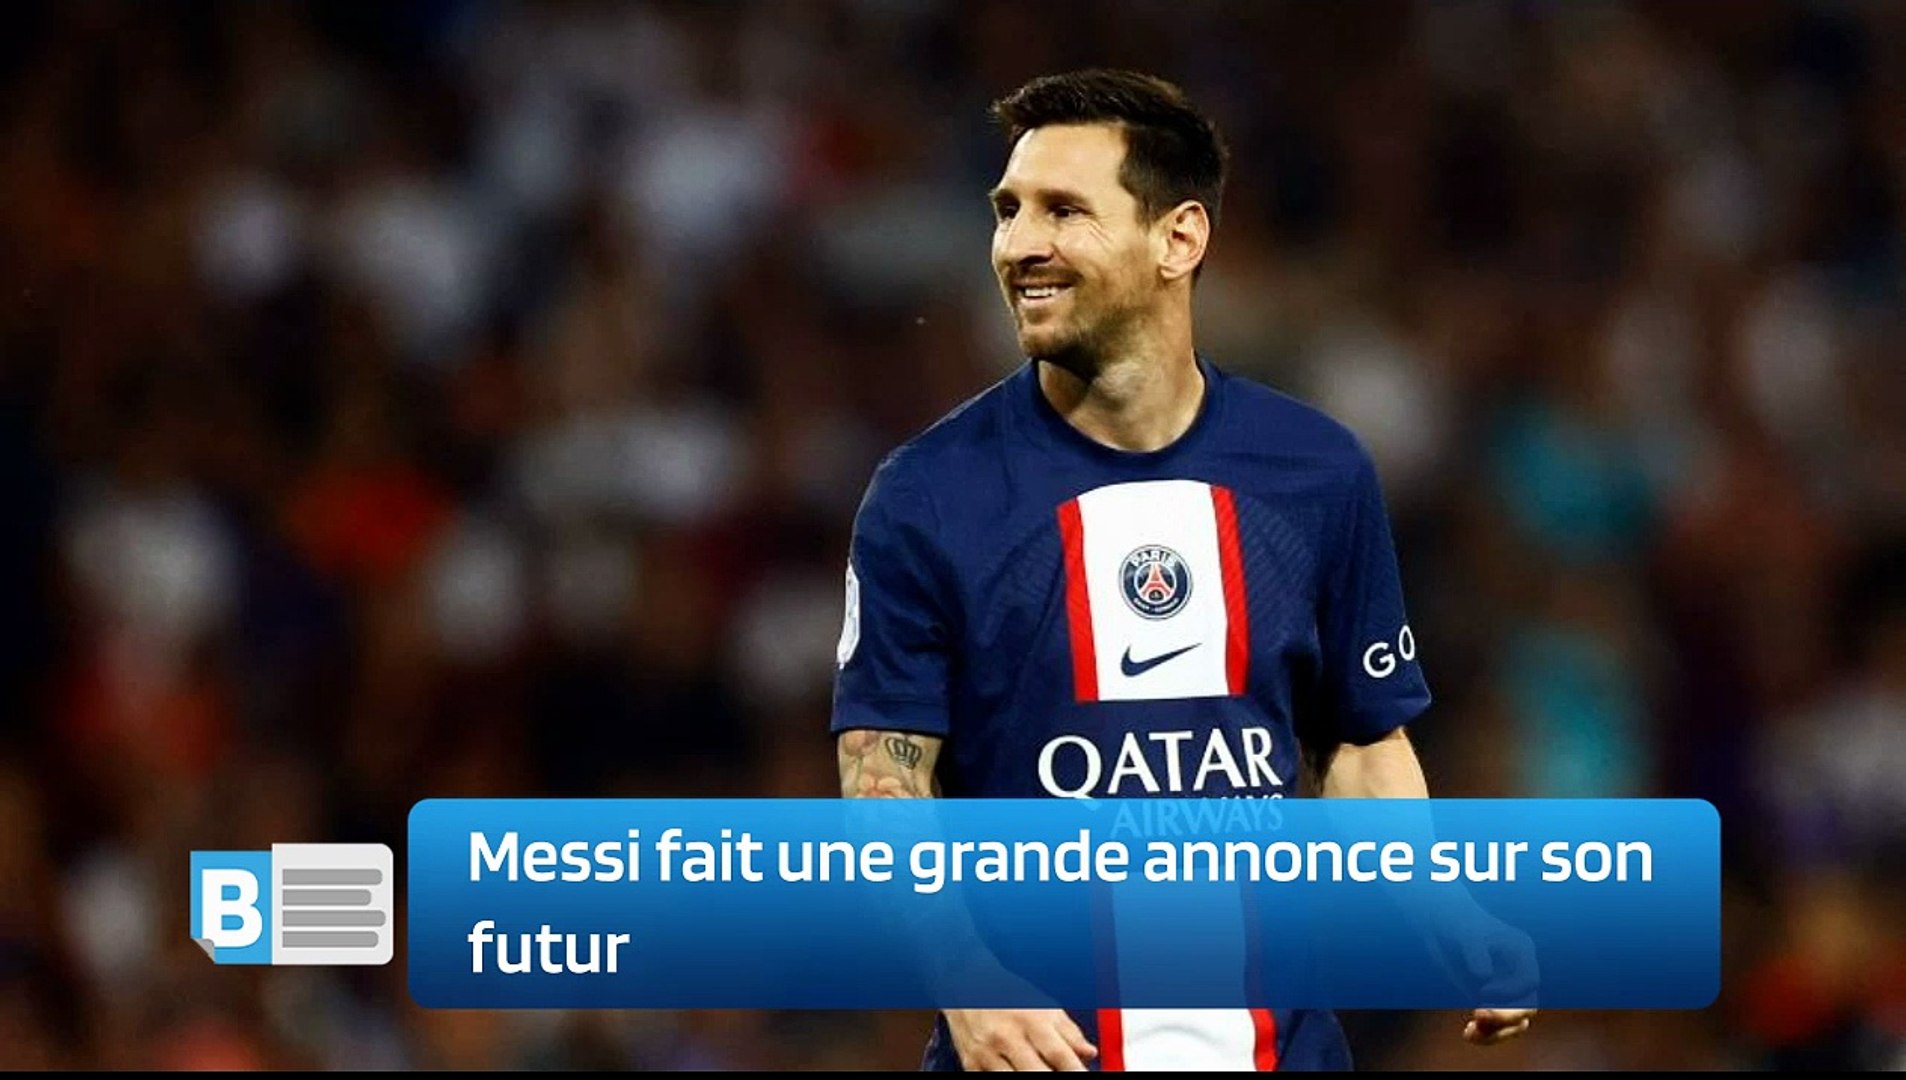 Messi fait une grande annonce sur son futur - Vidéo Dailymotion